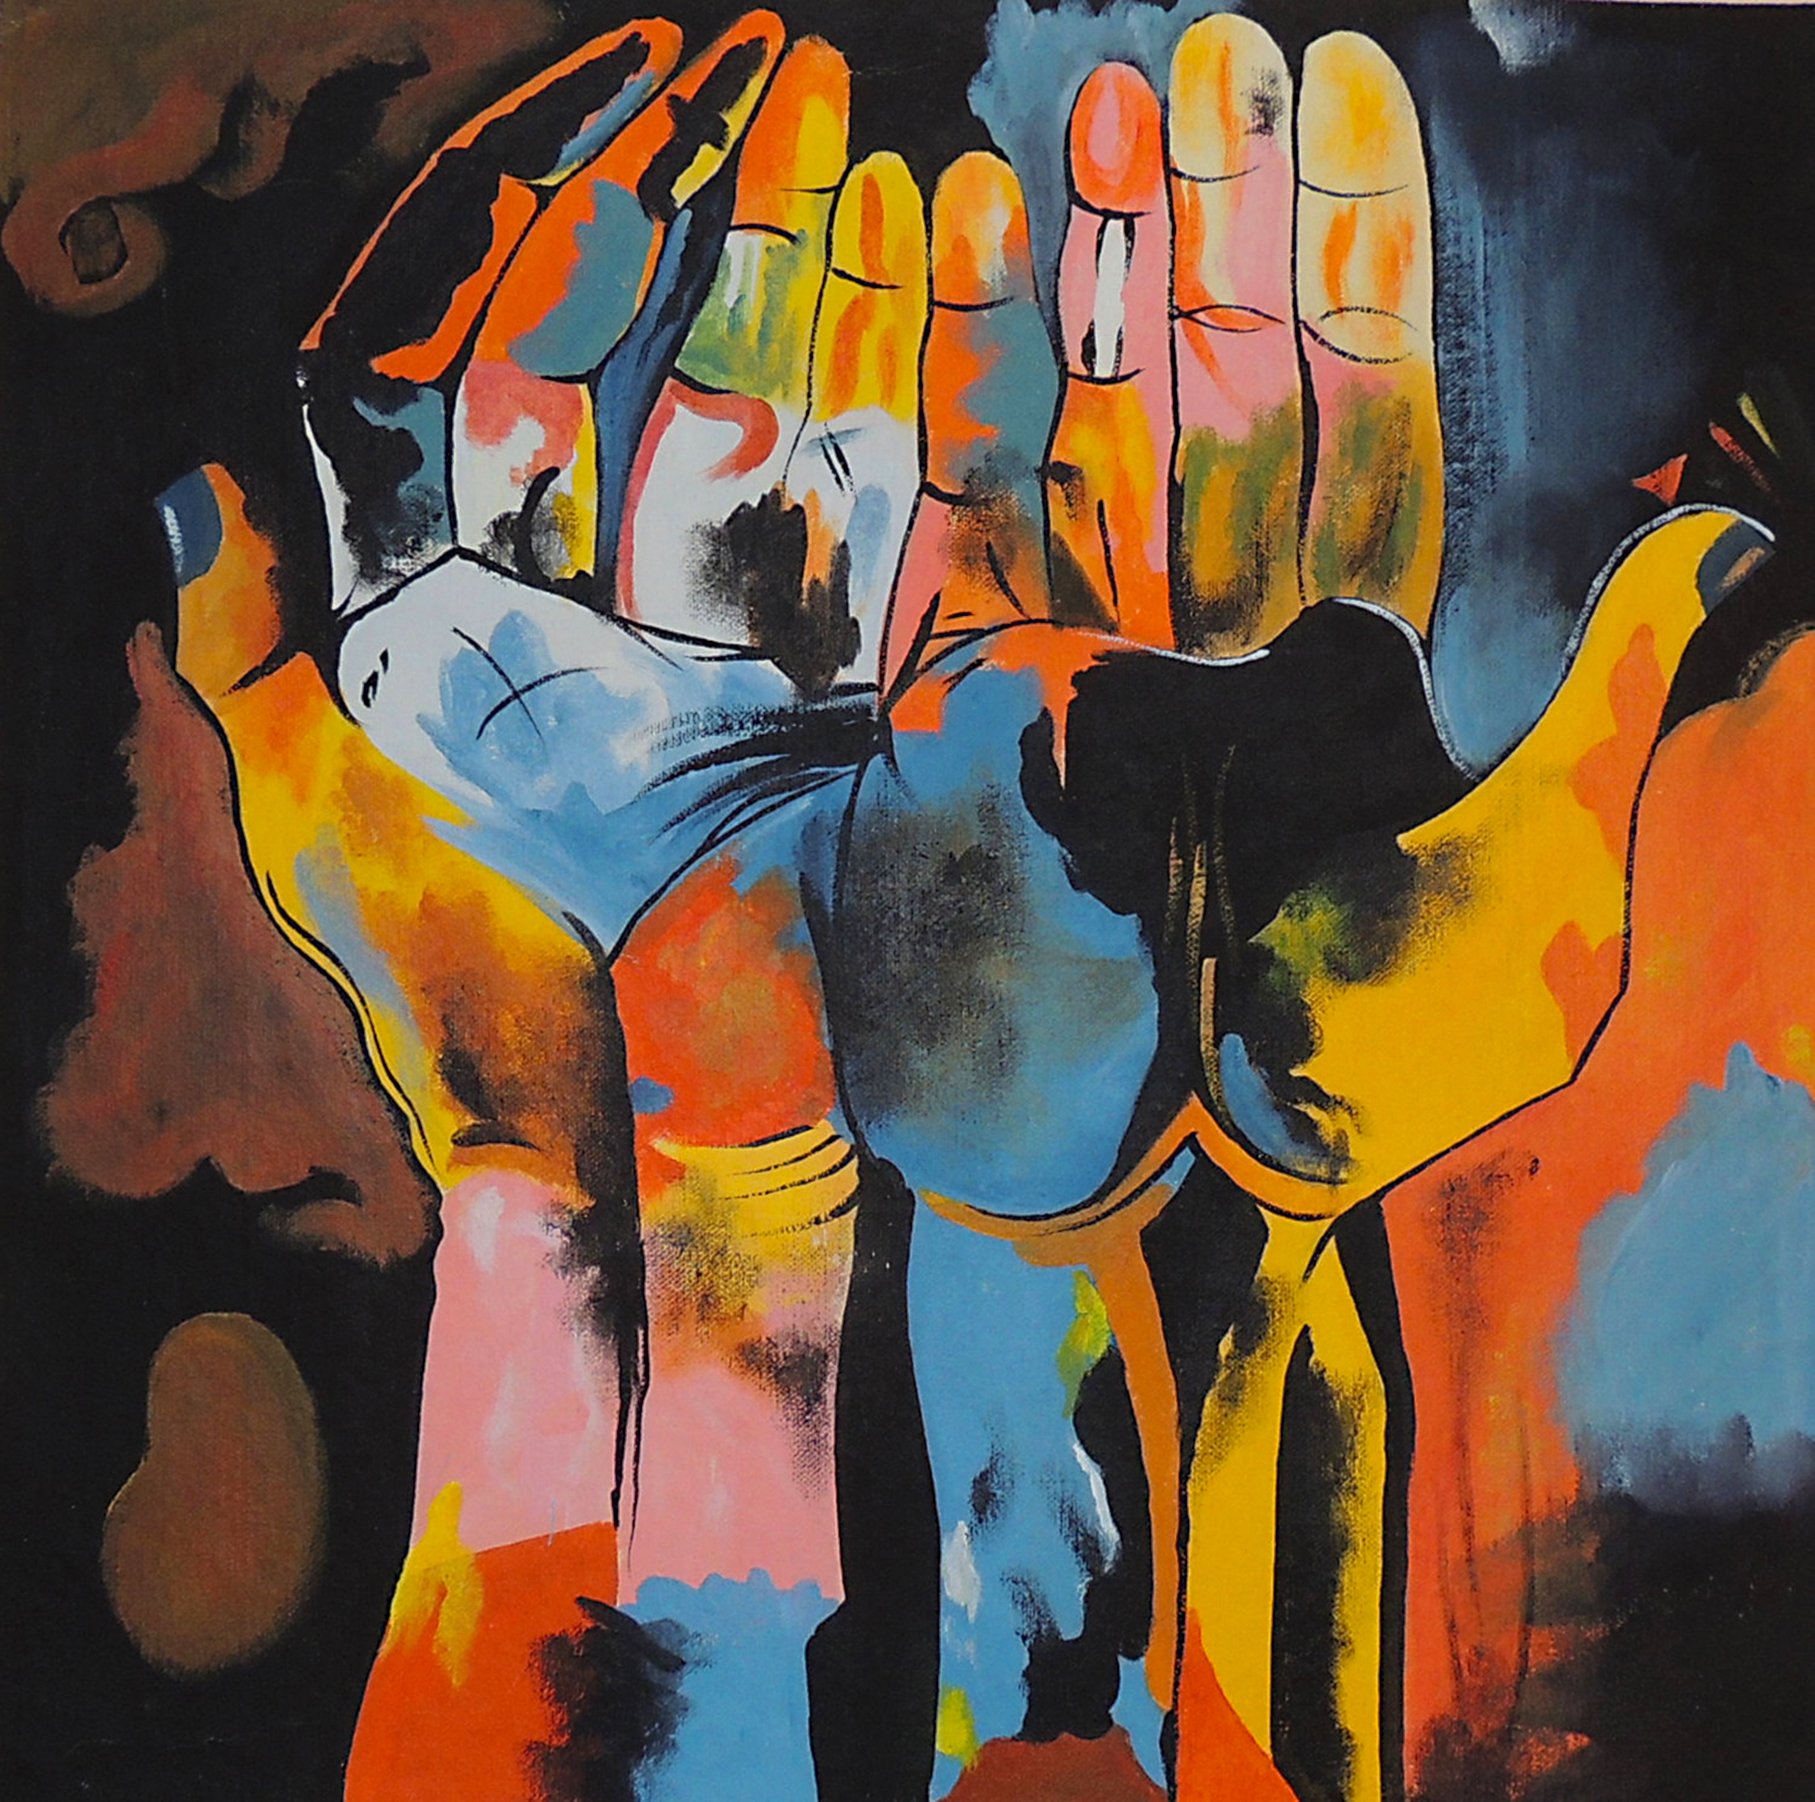 Diversity Hands by Oswaldo Guayasamin